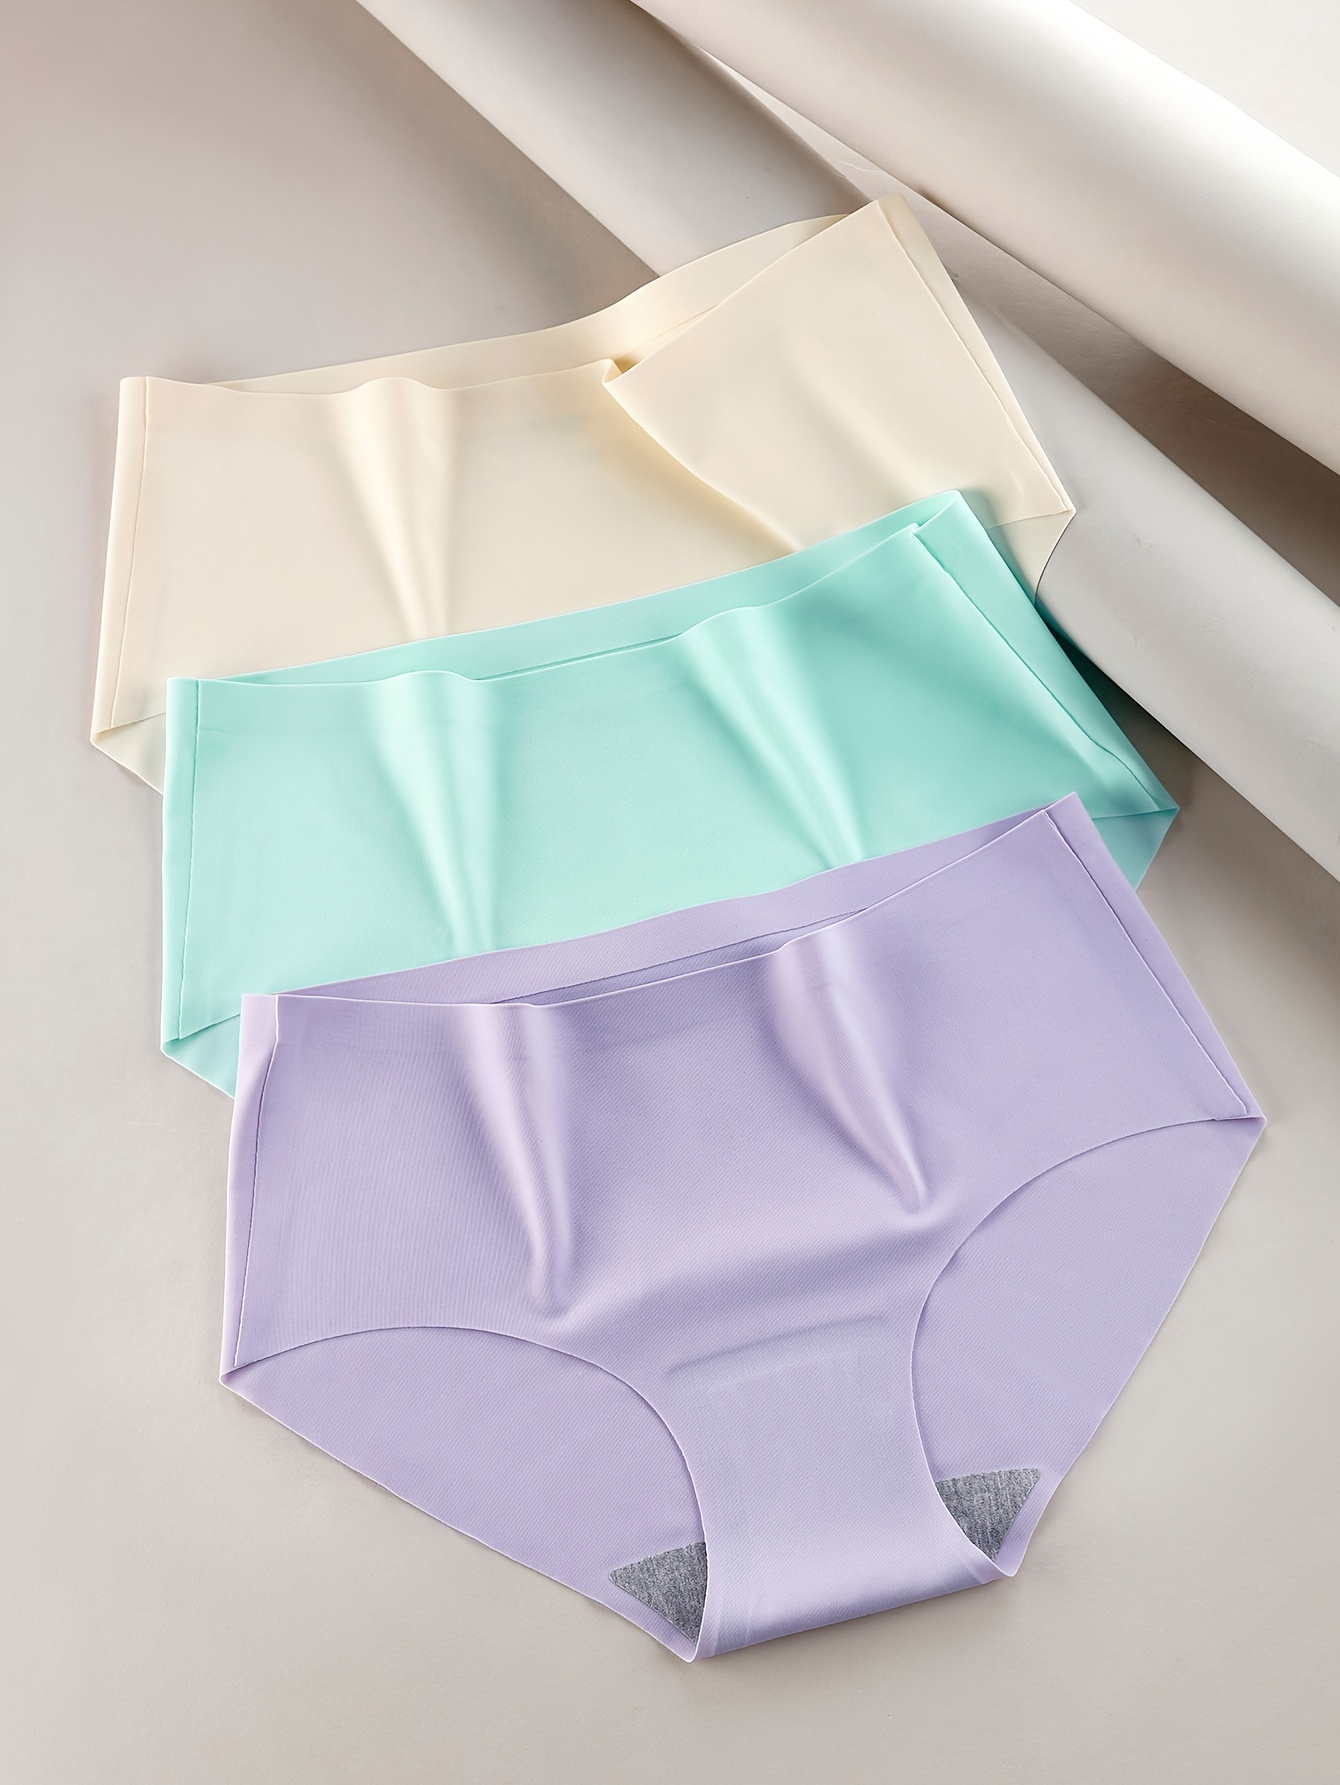 3Pcs Cotton Panties Women's Underwear Seamless Comfort Briefs High